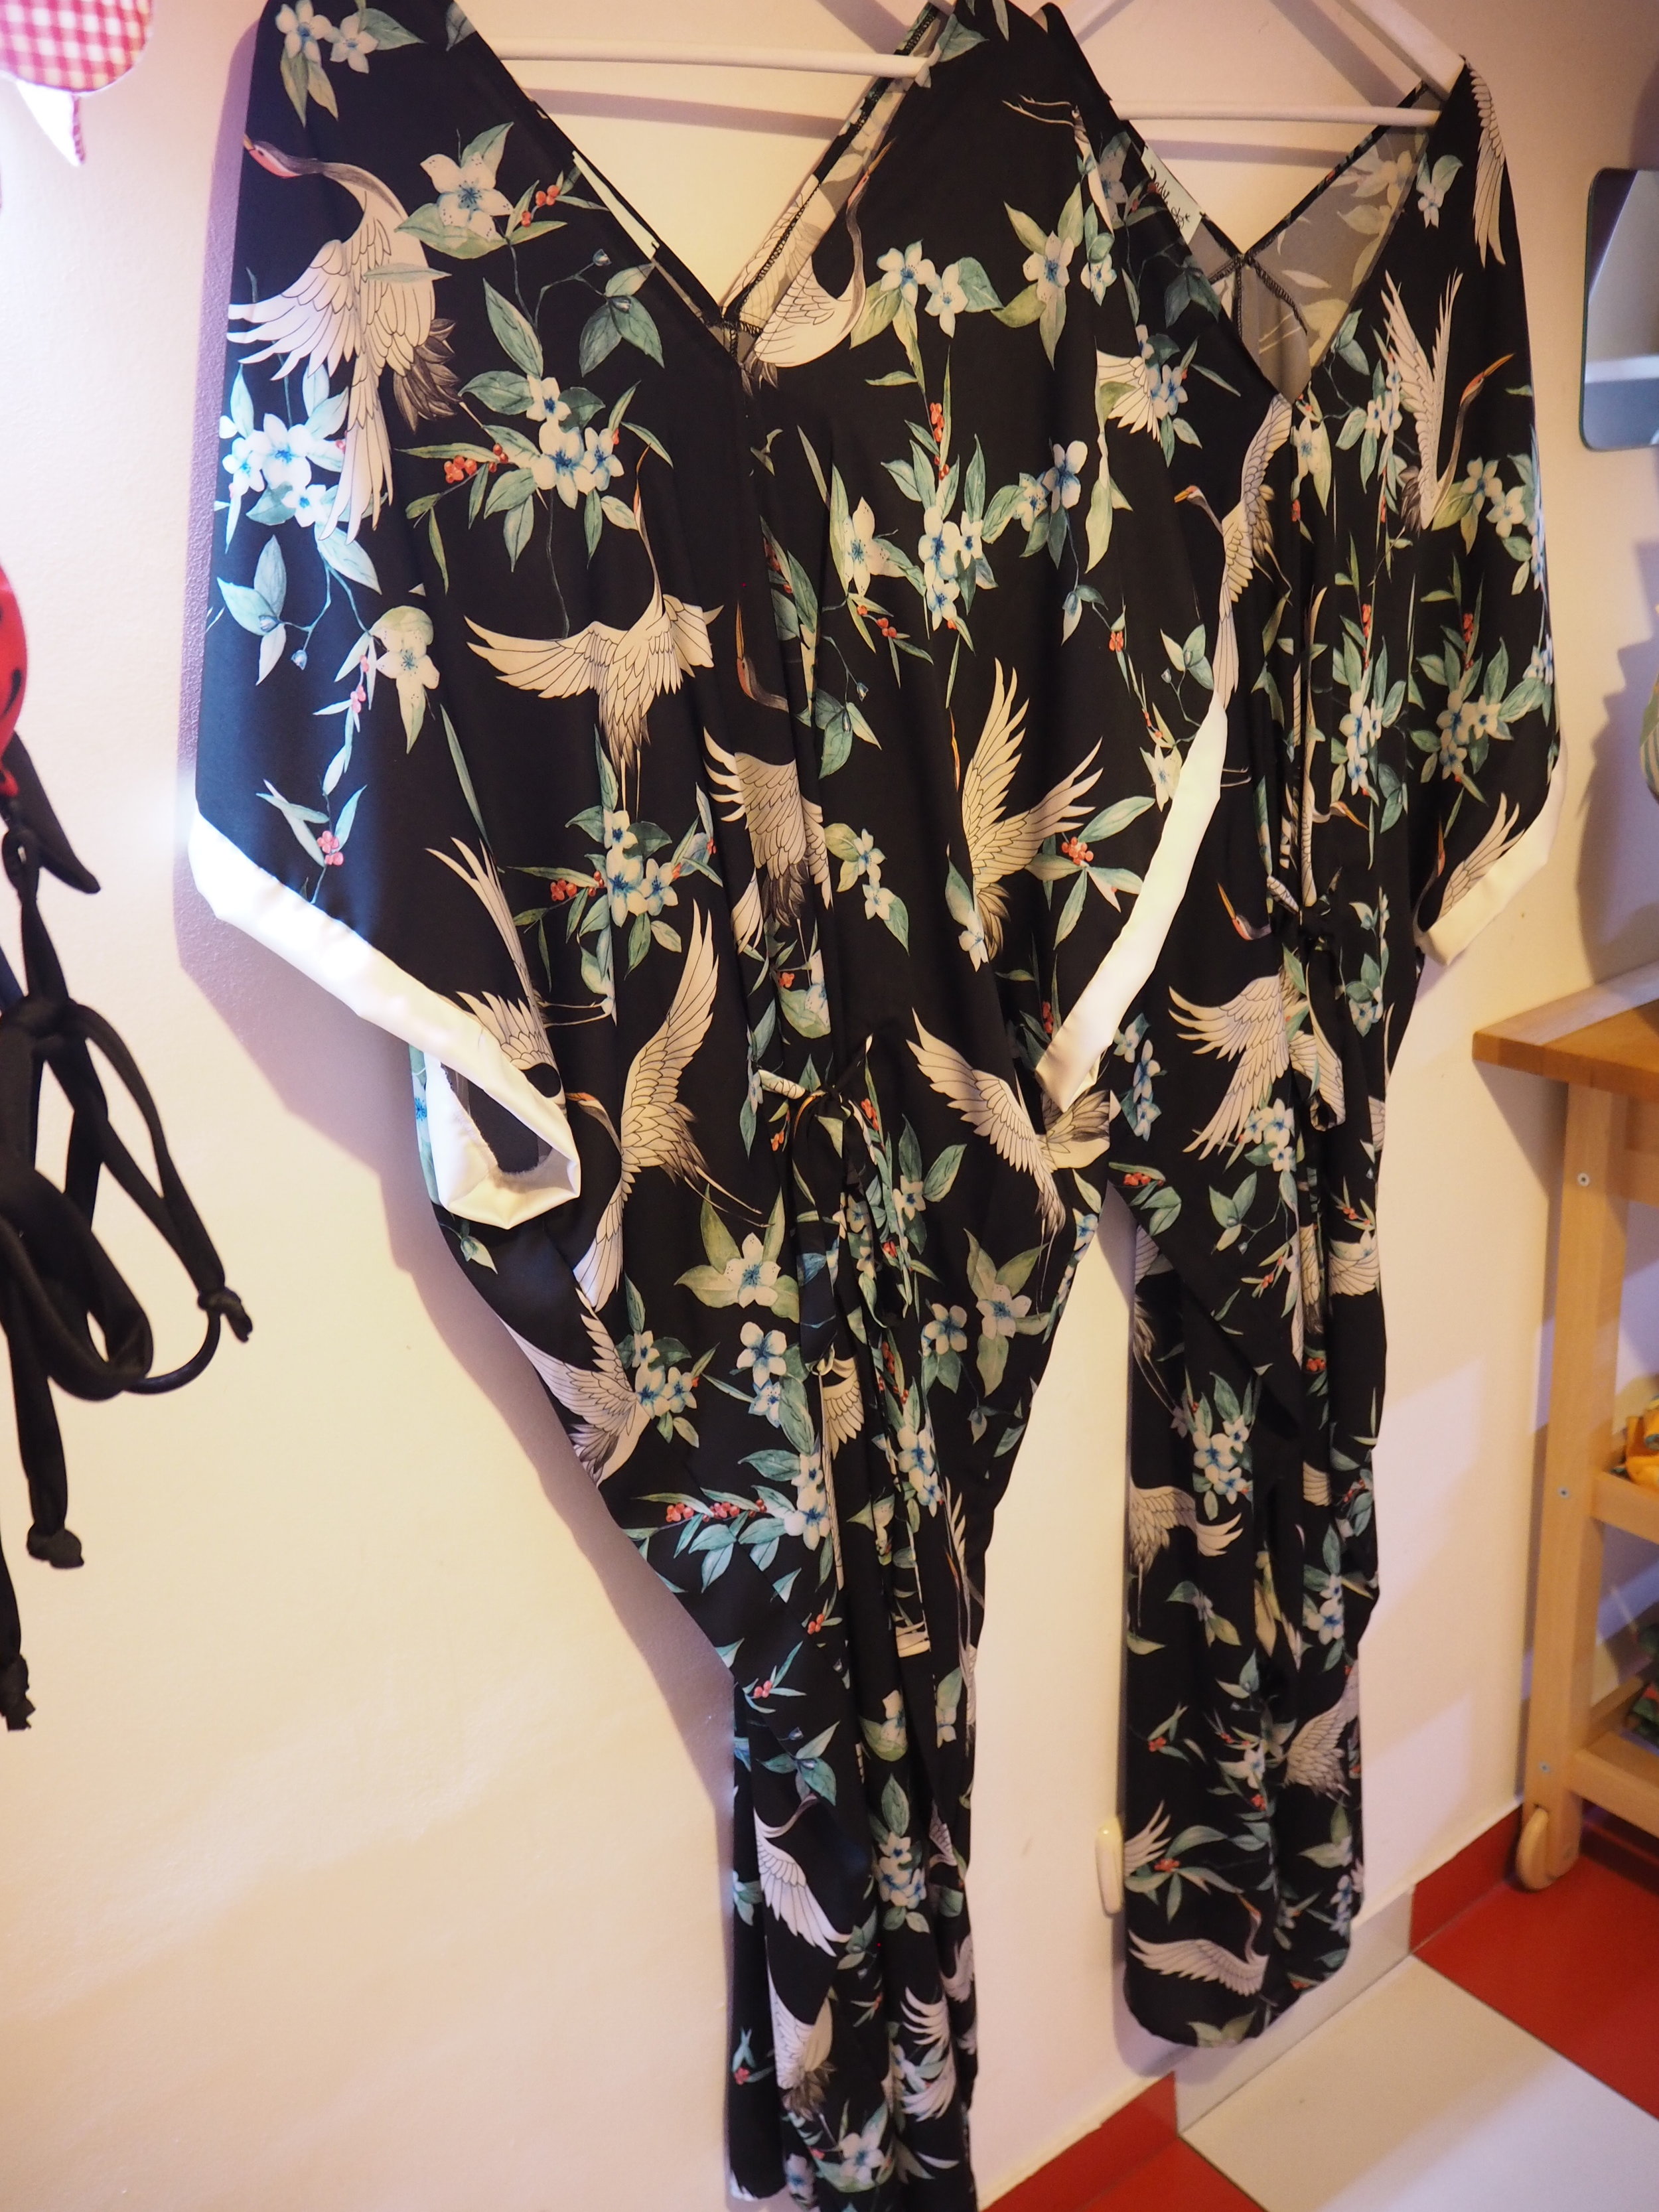 tiendas-ropa-madrid-originles-lady-cachuete-kimonos.JPG